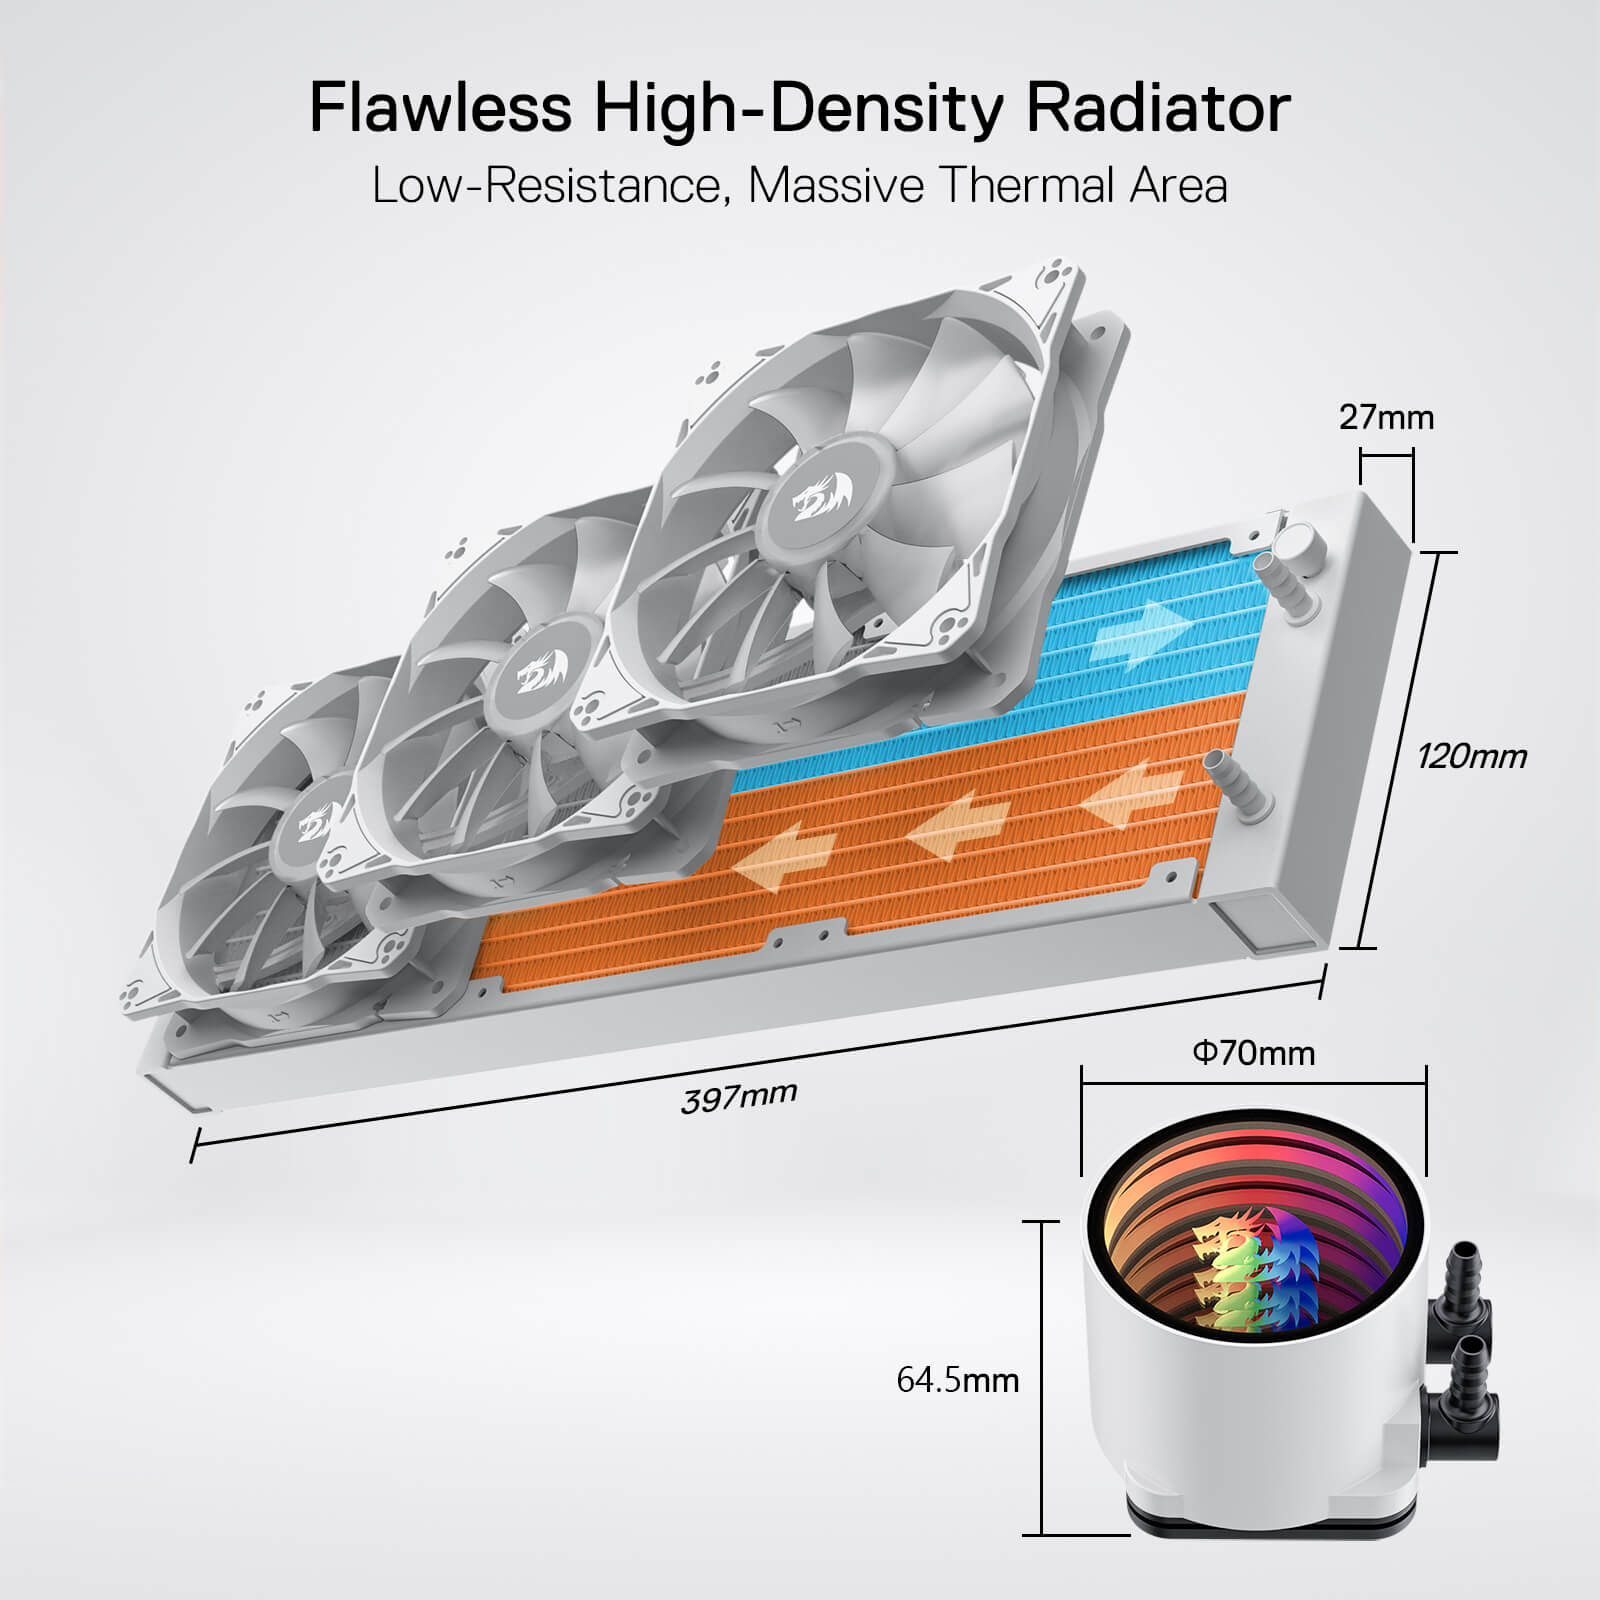 ARGB All-in-one AIO Liquid CPU Cooler 360mm Radiator